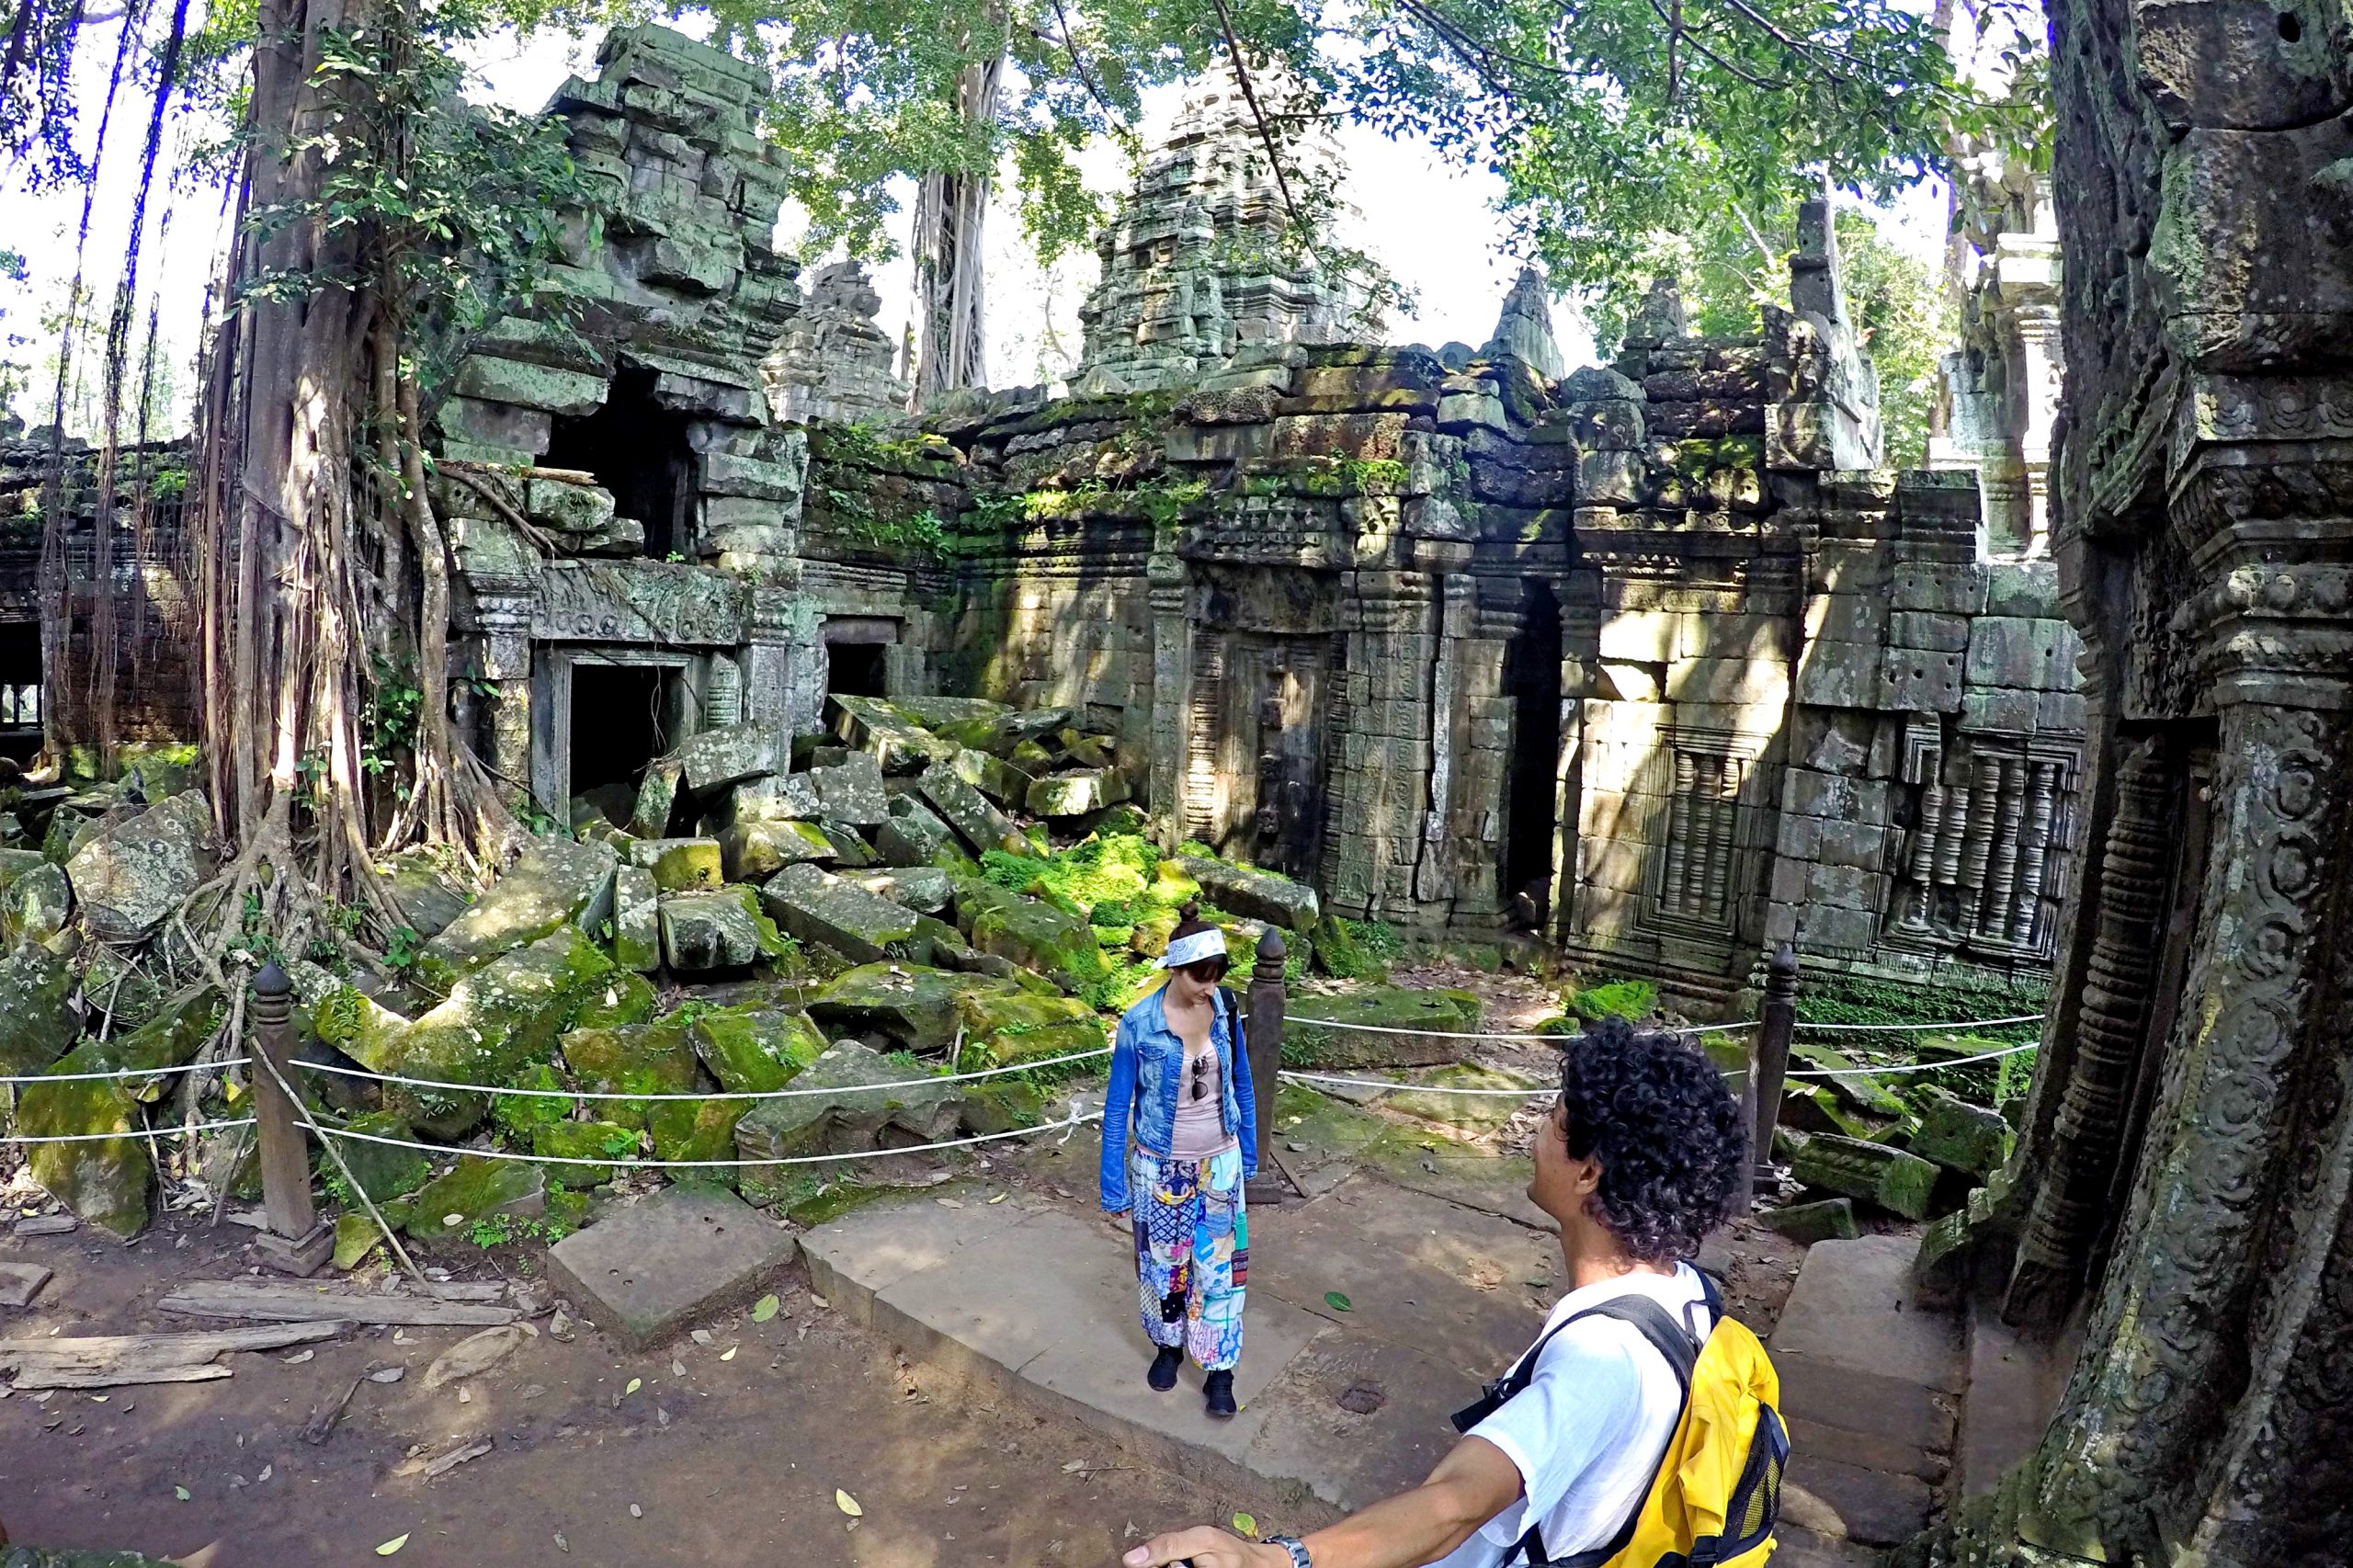 Angkor Temples Cambodia